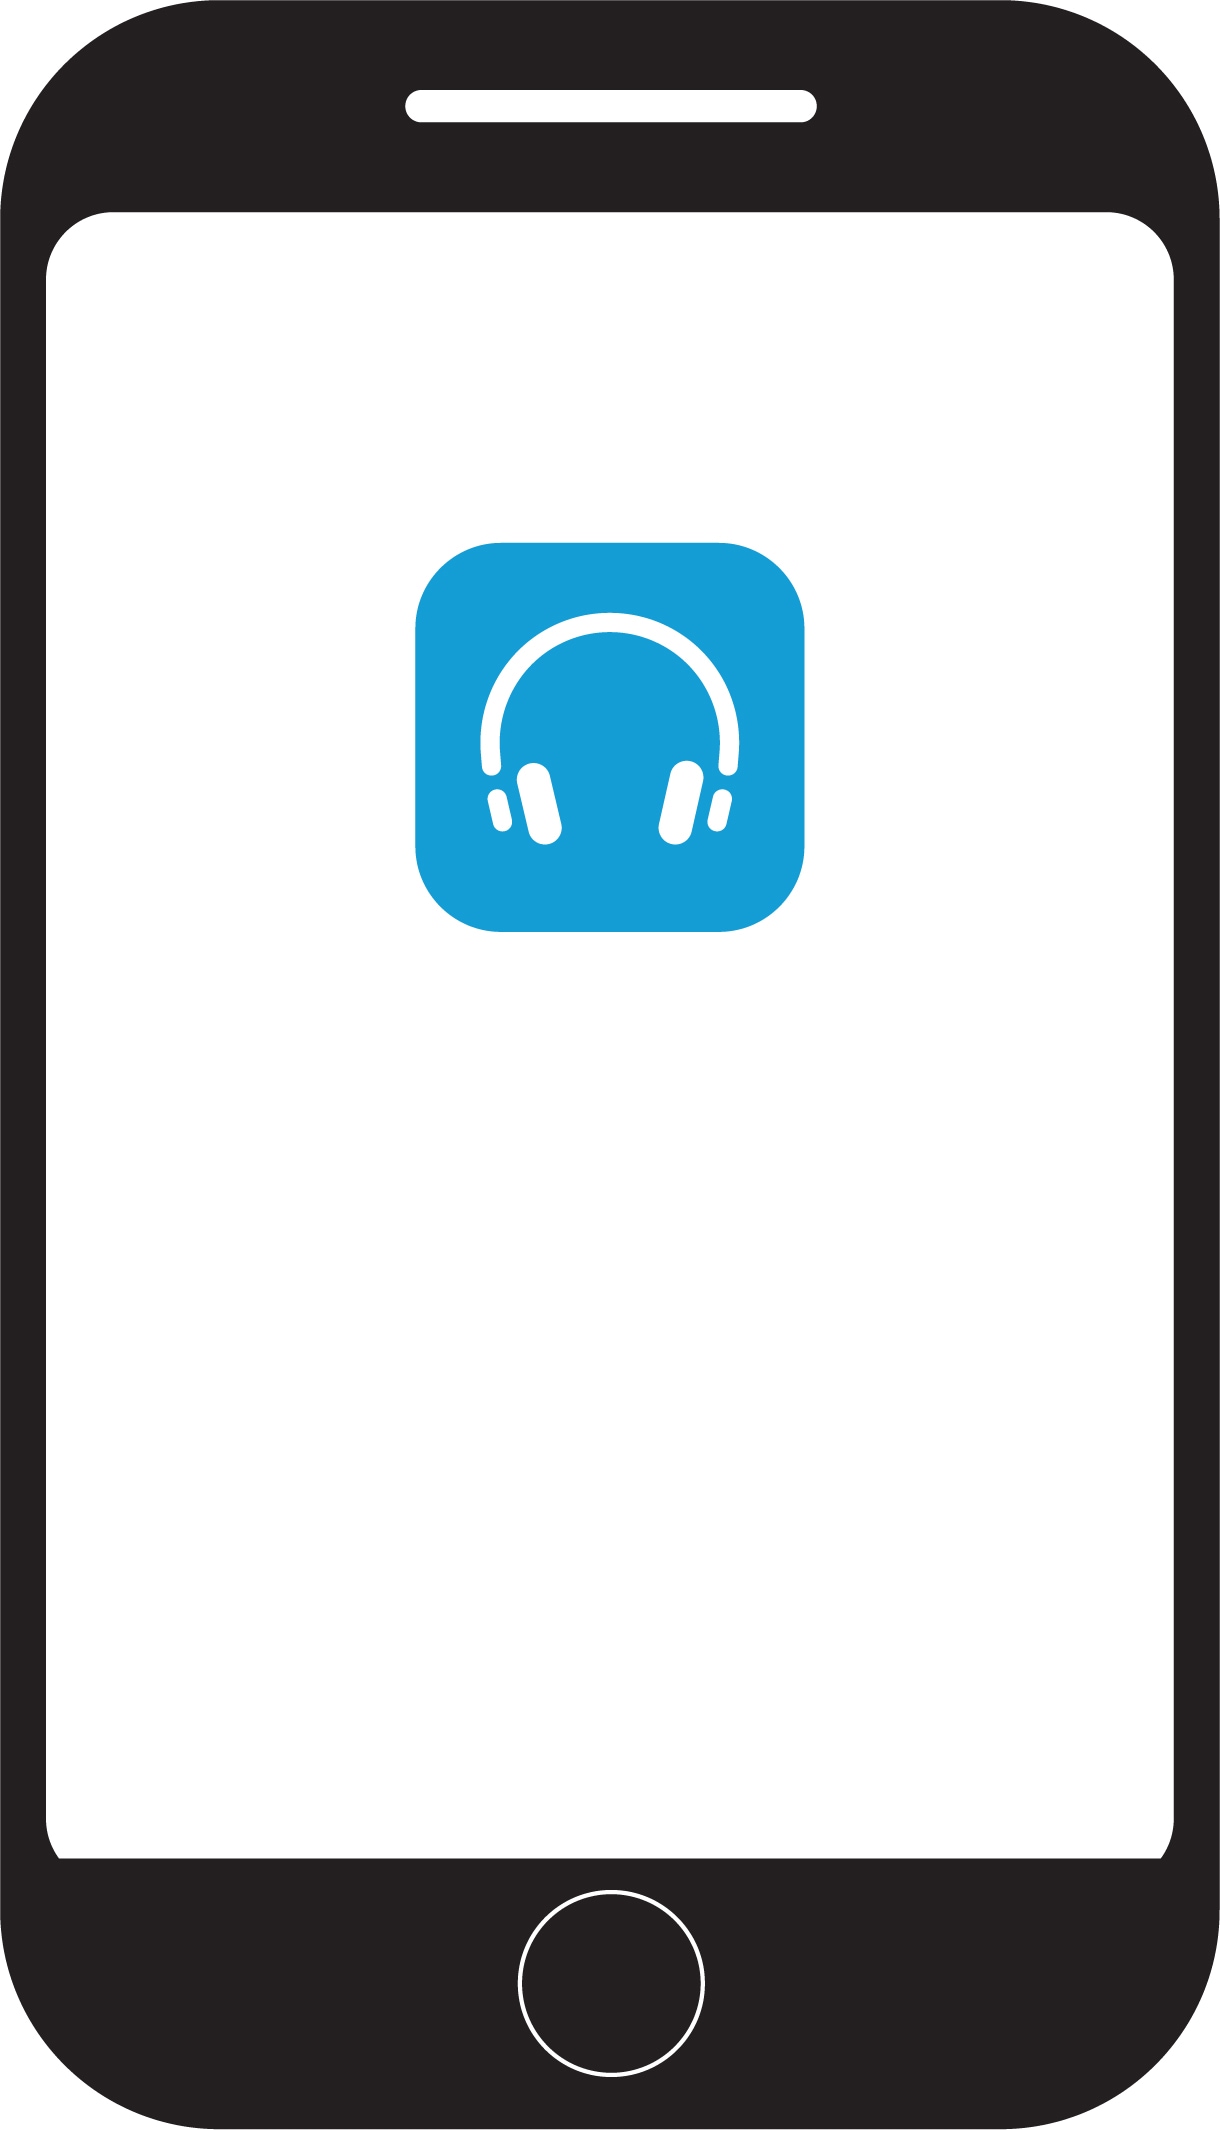 Logotip aplikacije "Cisco Slušalice" na ekranu mobilnog telefona